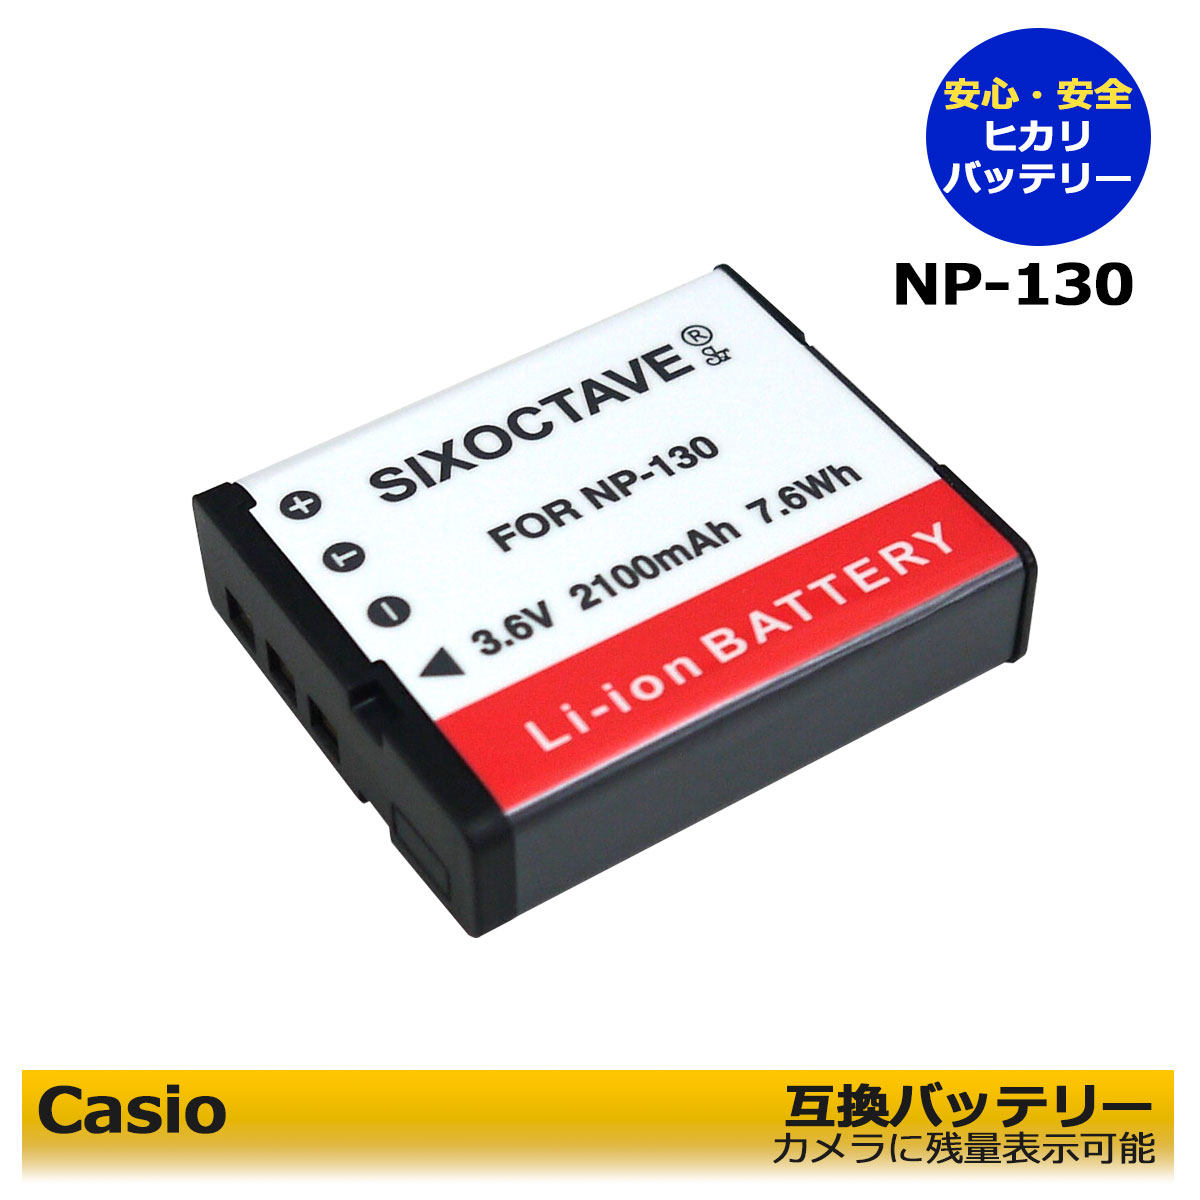 Casio NP-130 互換バッテリー1点 カメラ本体で残量表示可能 純正充電器でも充電可能 EX-10 / EX-10BE / EX-100 / EX-100F / EX-100PRO / EX-H30 / EX-H35 / EX-SC100 / EX-SC200 / EX-FC300S / EX-FC400